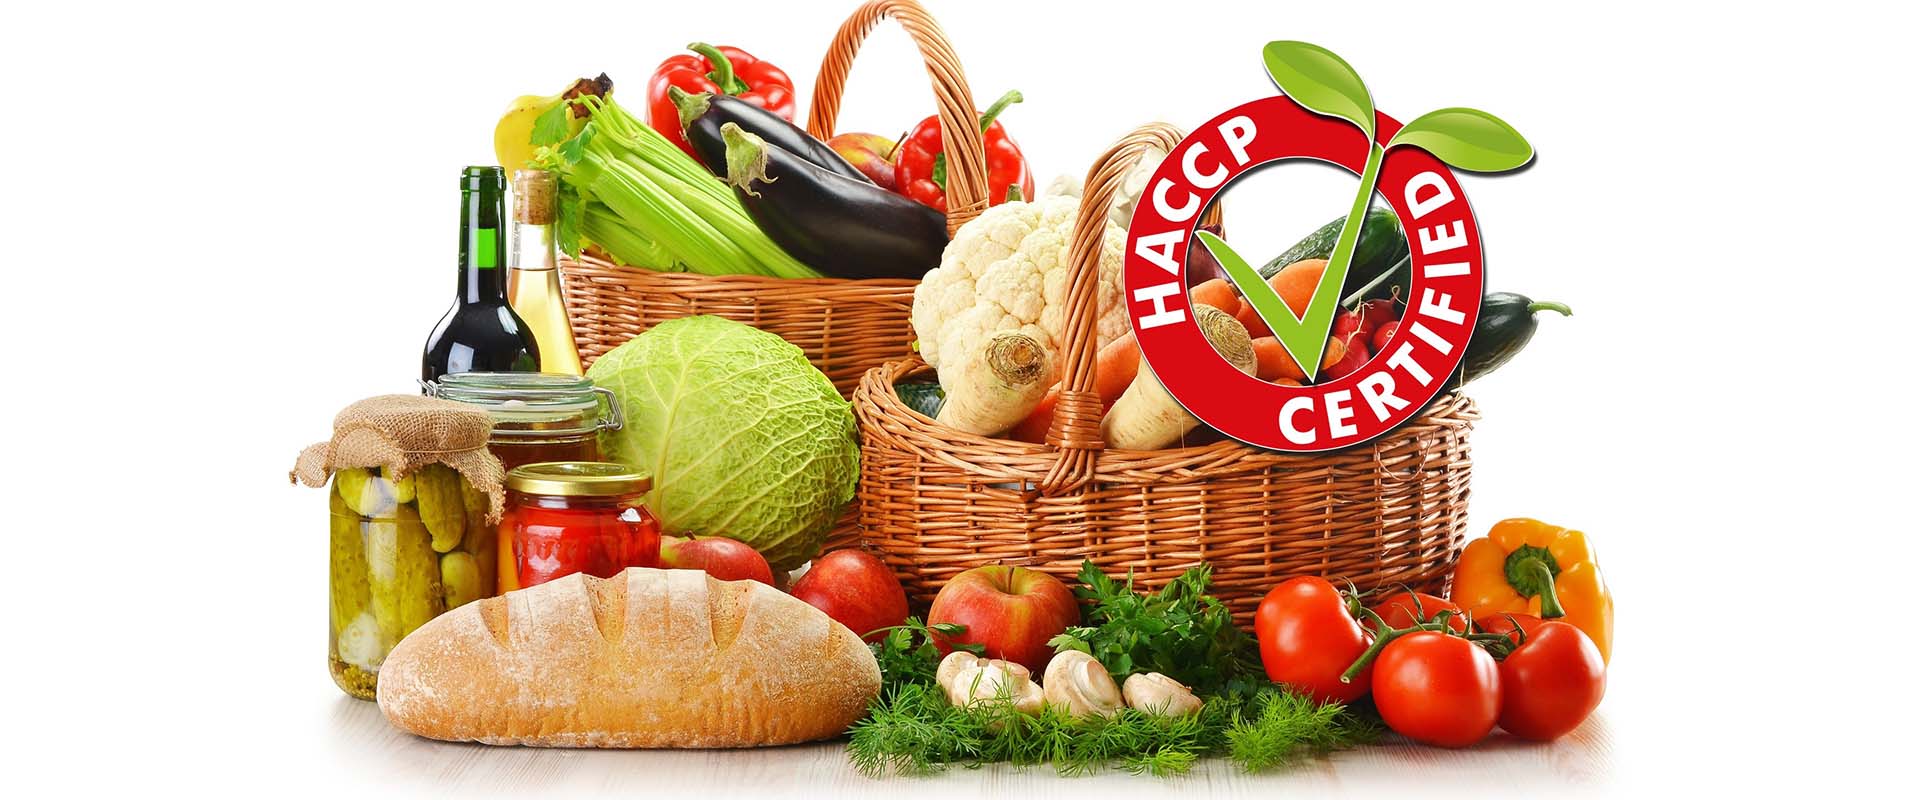 timbro haccp certified su immagine di frutta e verdura